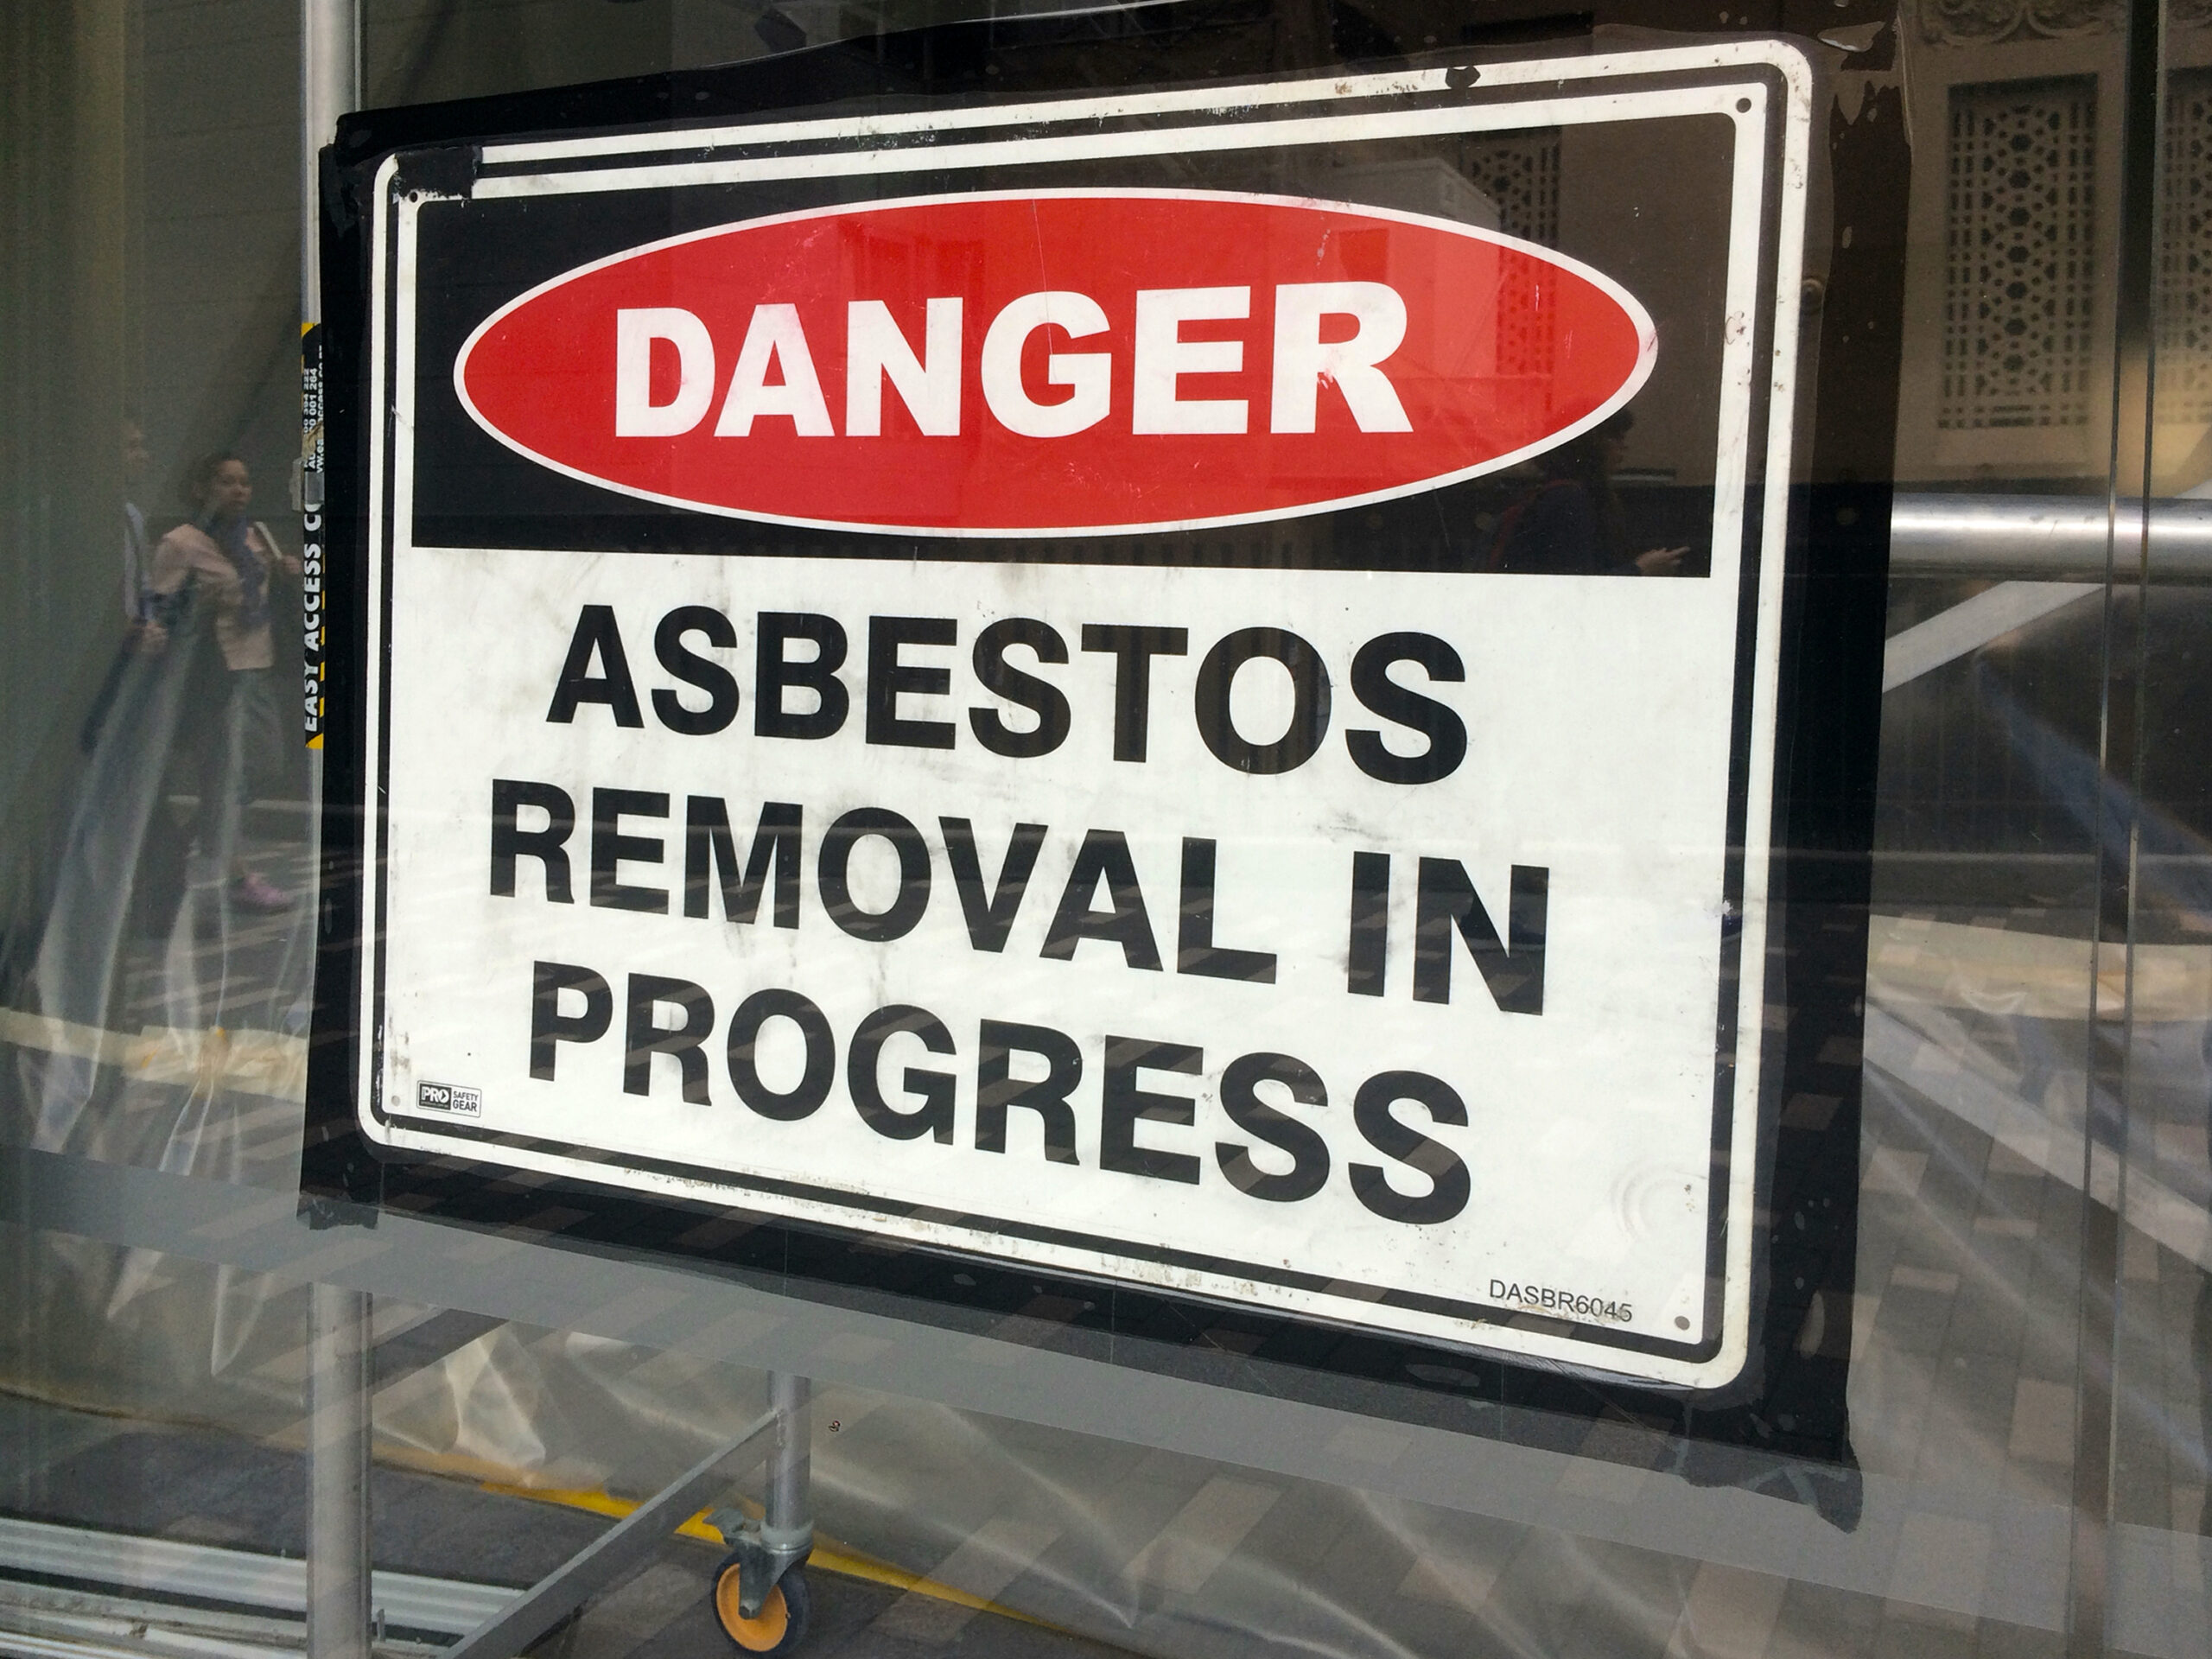 Danger Asbestos Removal in Progress